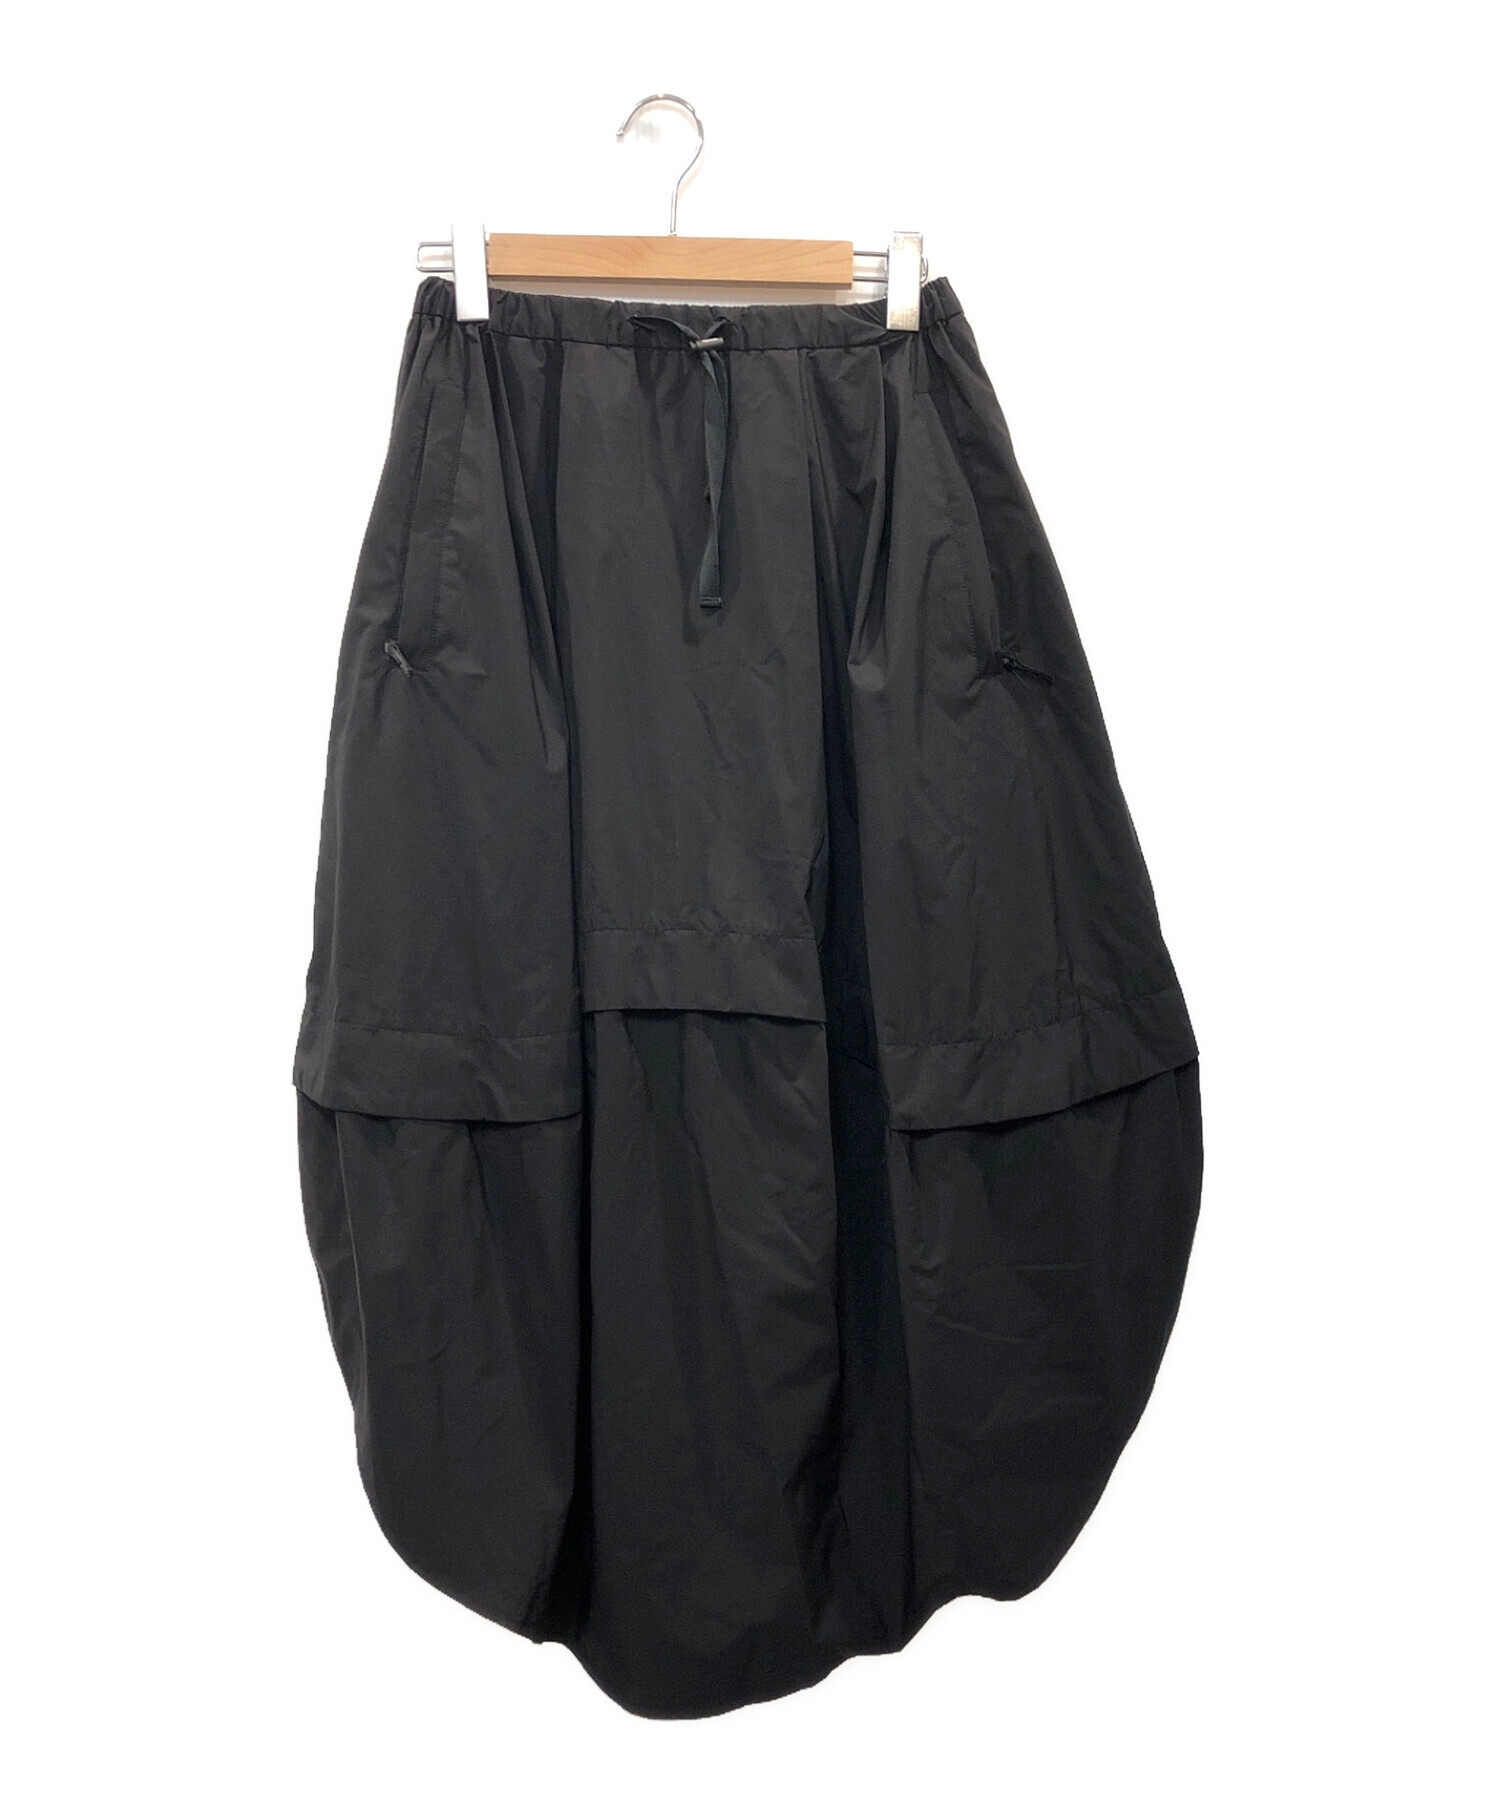 nagonstans (ナゴンスタンス) PERTEX SHIELDドロストコクーンスカート ブラック サイズ:S